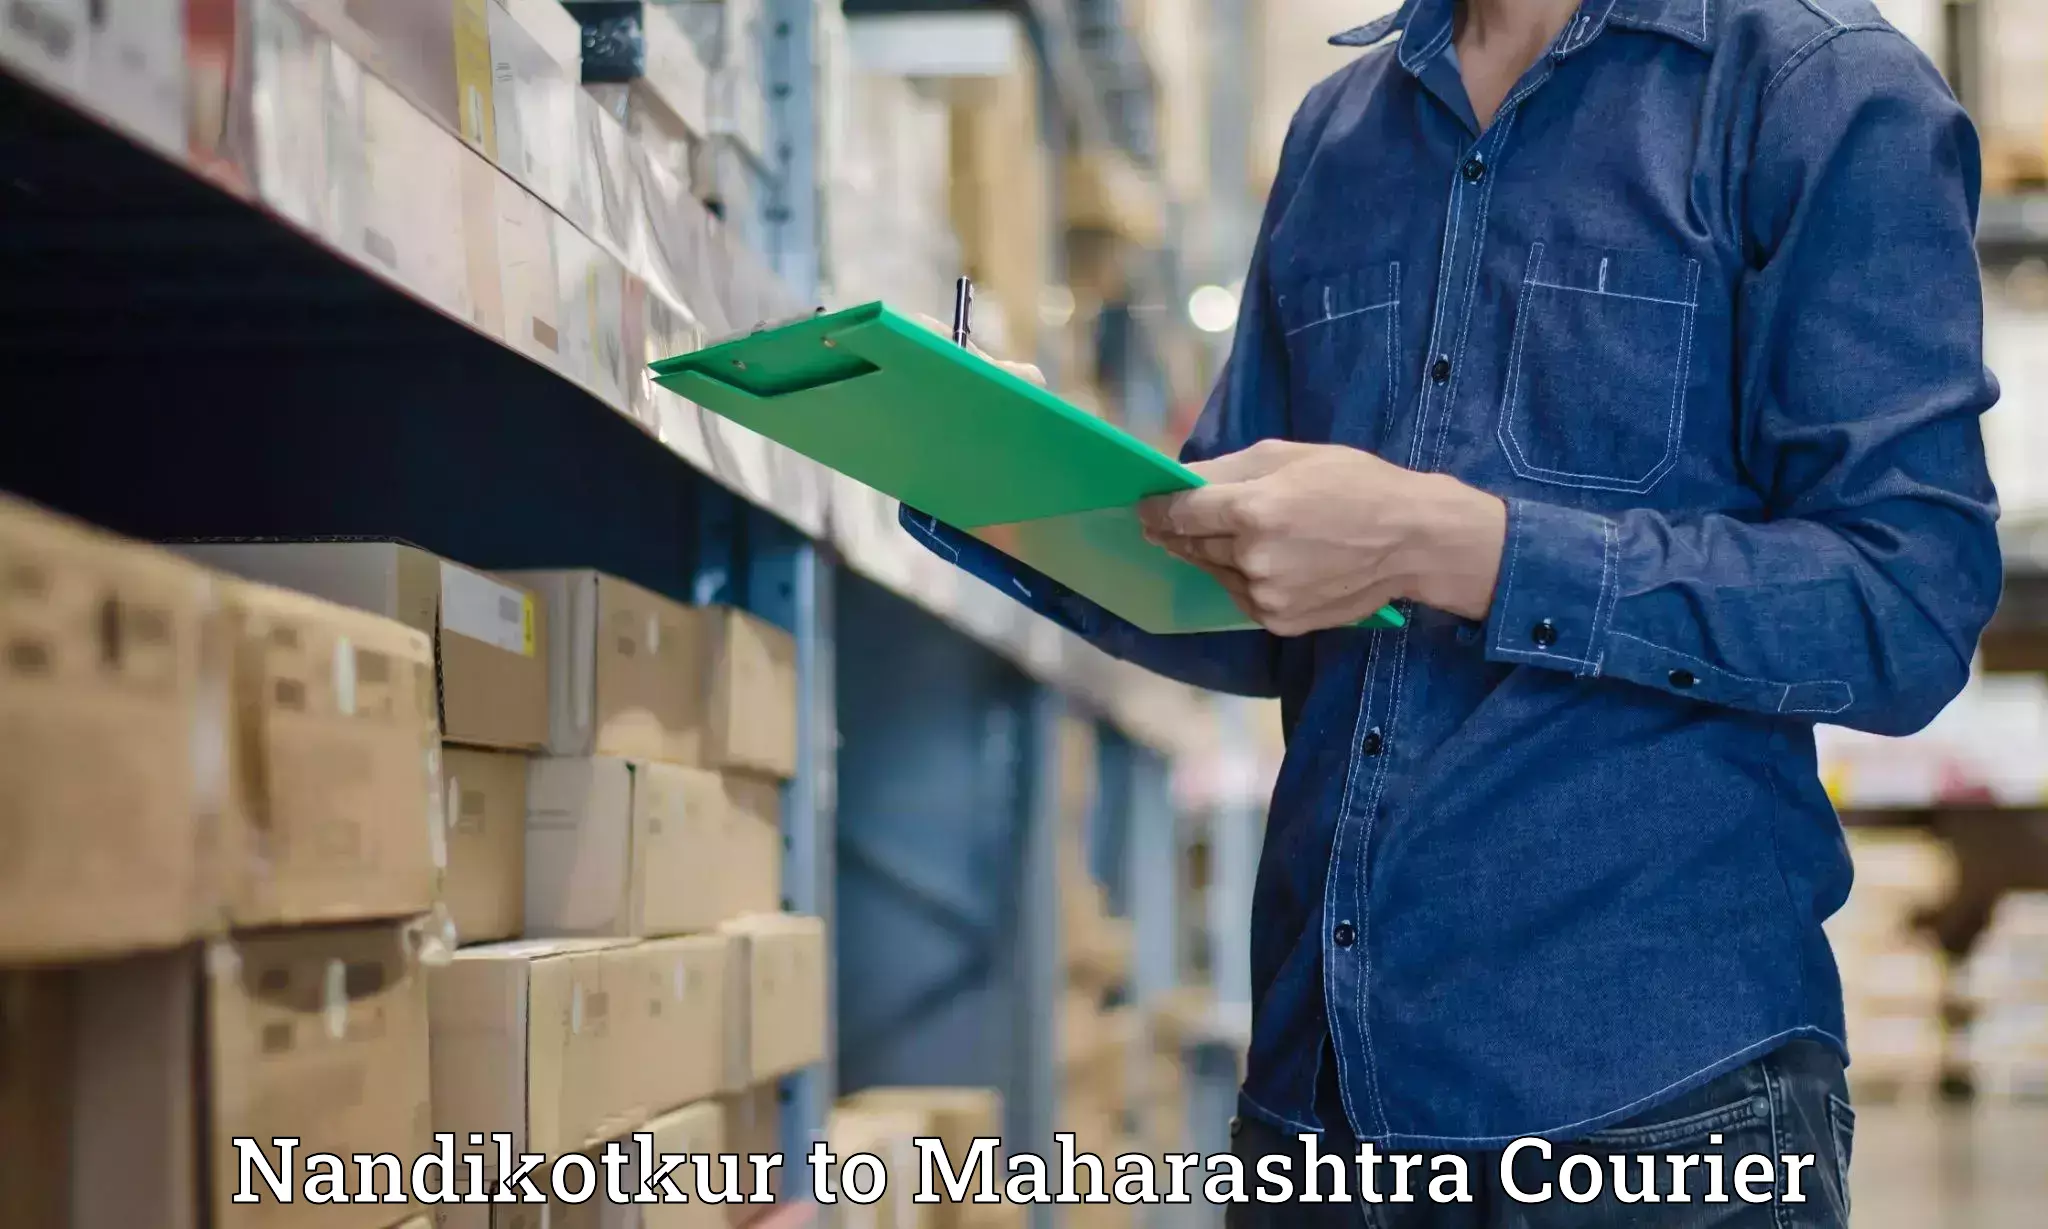 24/7 courier service in Nandikotkur to IIT Mumbai